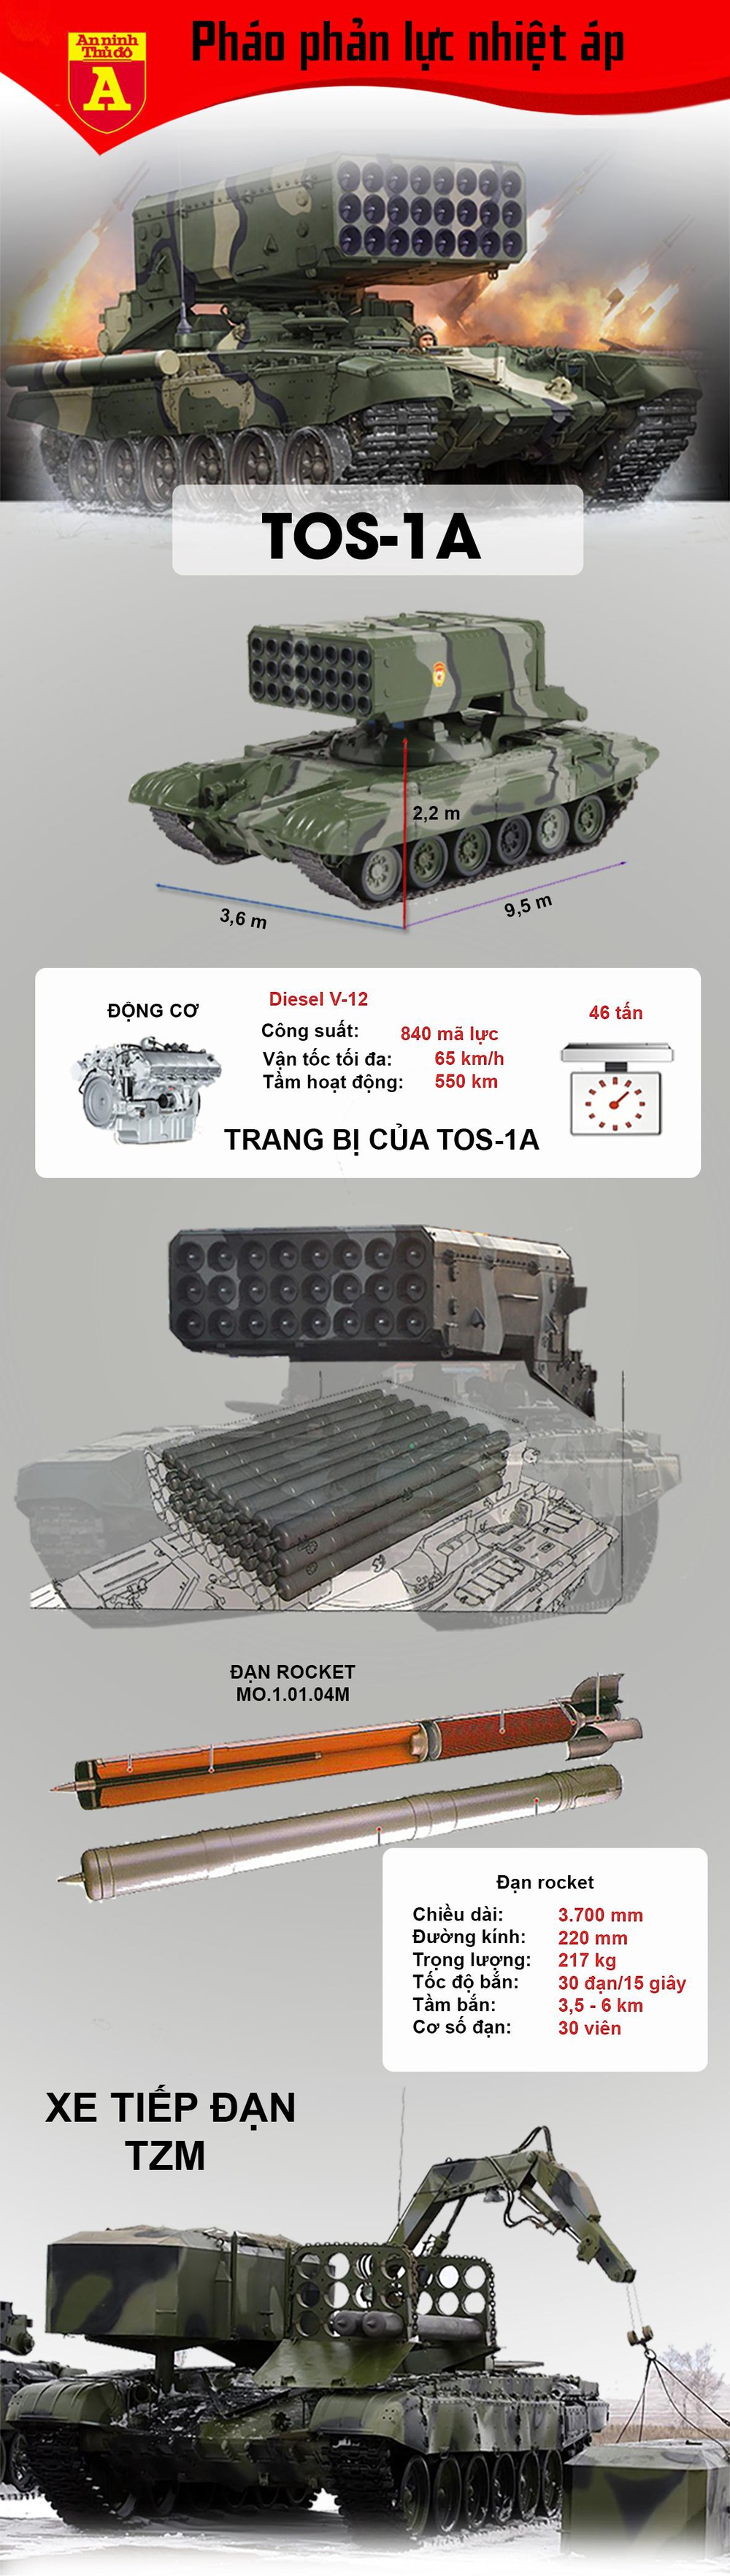 Sức công phá khủng khiếp của "Hỏa thần nhiệt áp" TOS-1A - Ảnh 1